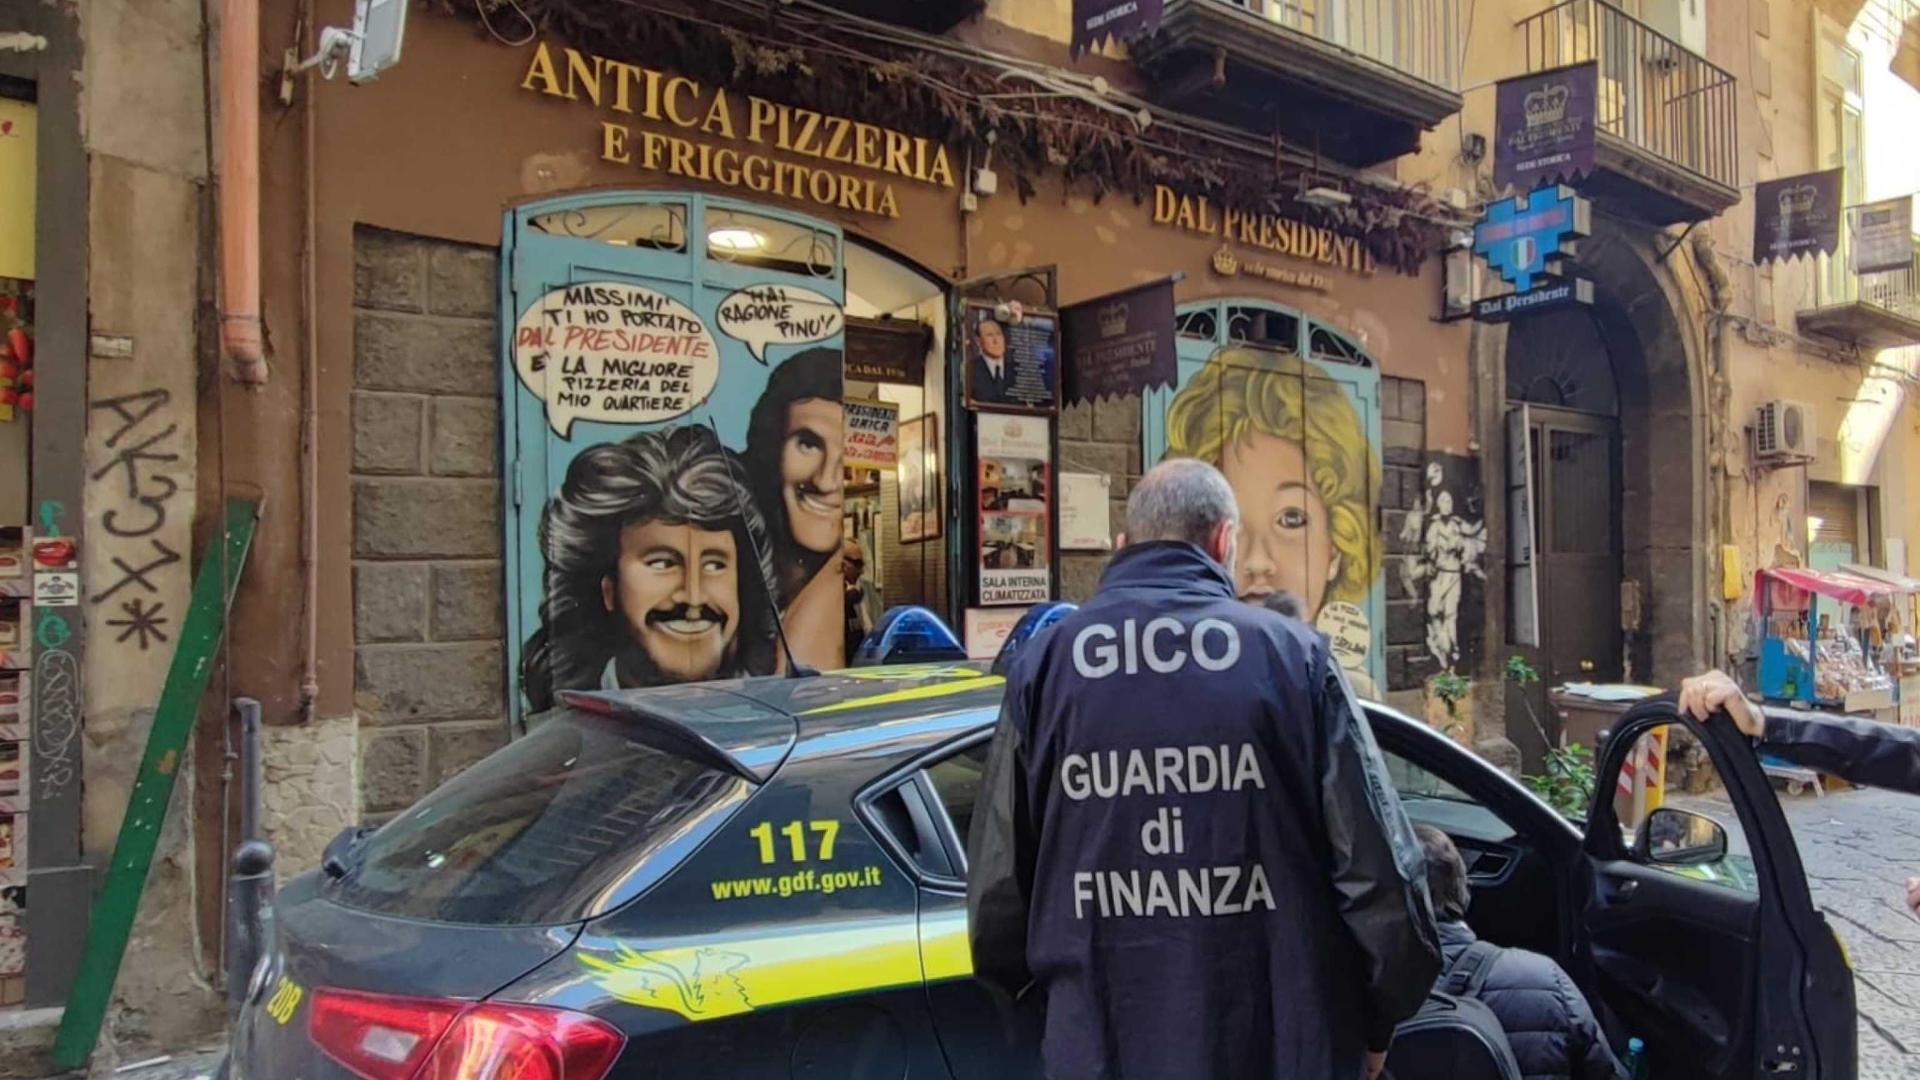 Arrestato il titolare della pizzeria "Dal Presidente", l'accusa è di aver agevolato il clan camorristico Contini